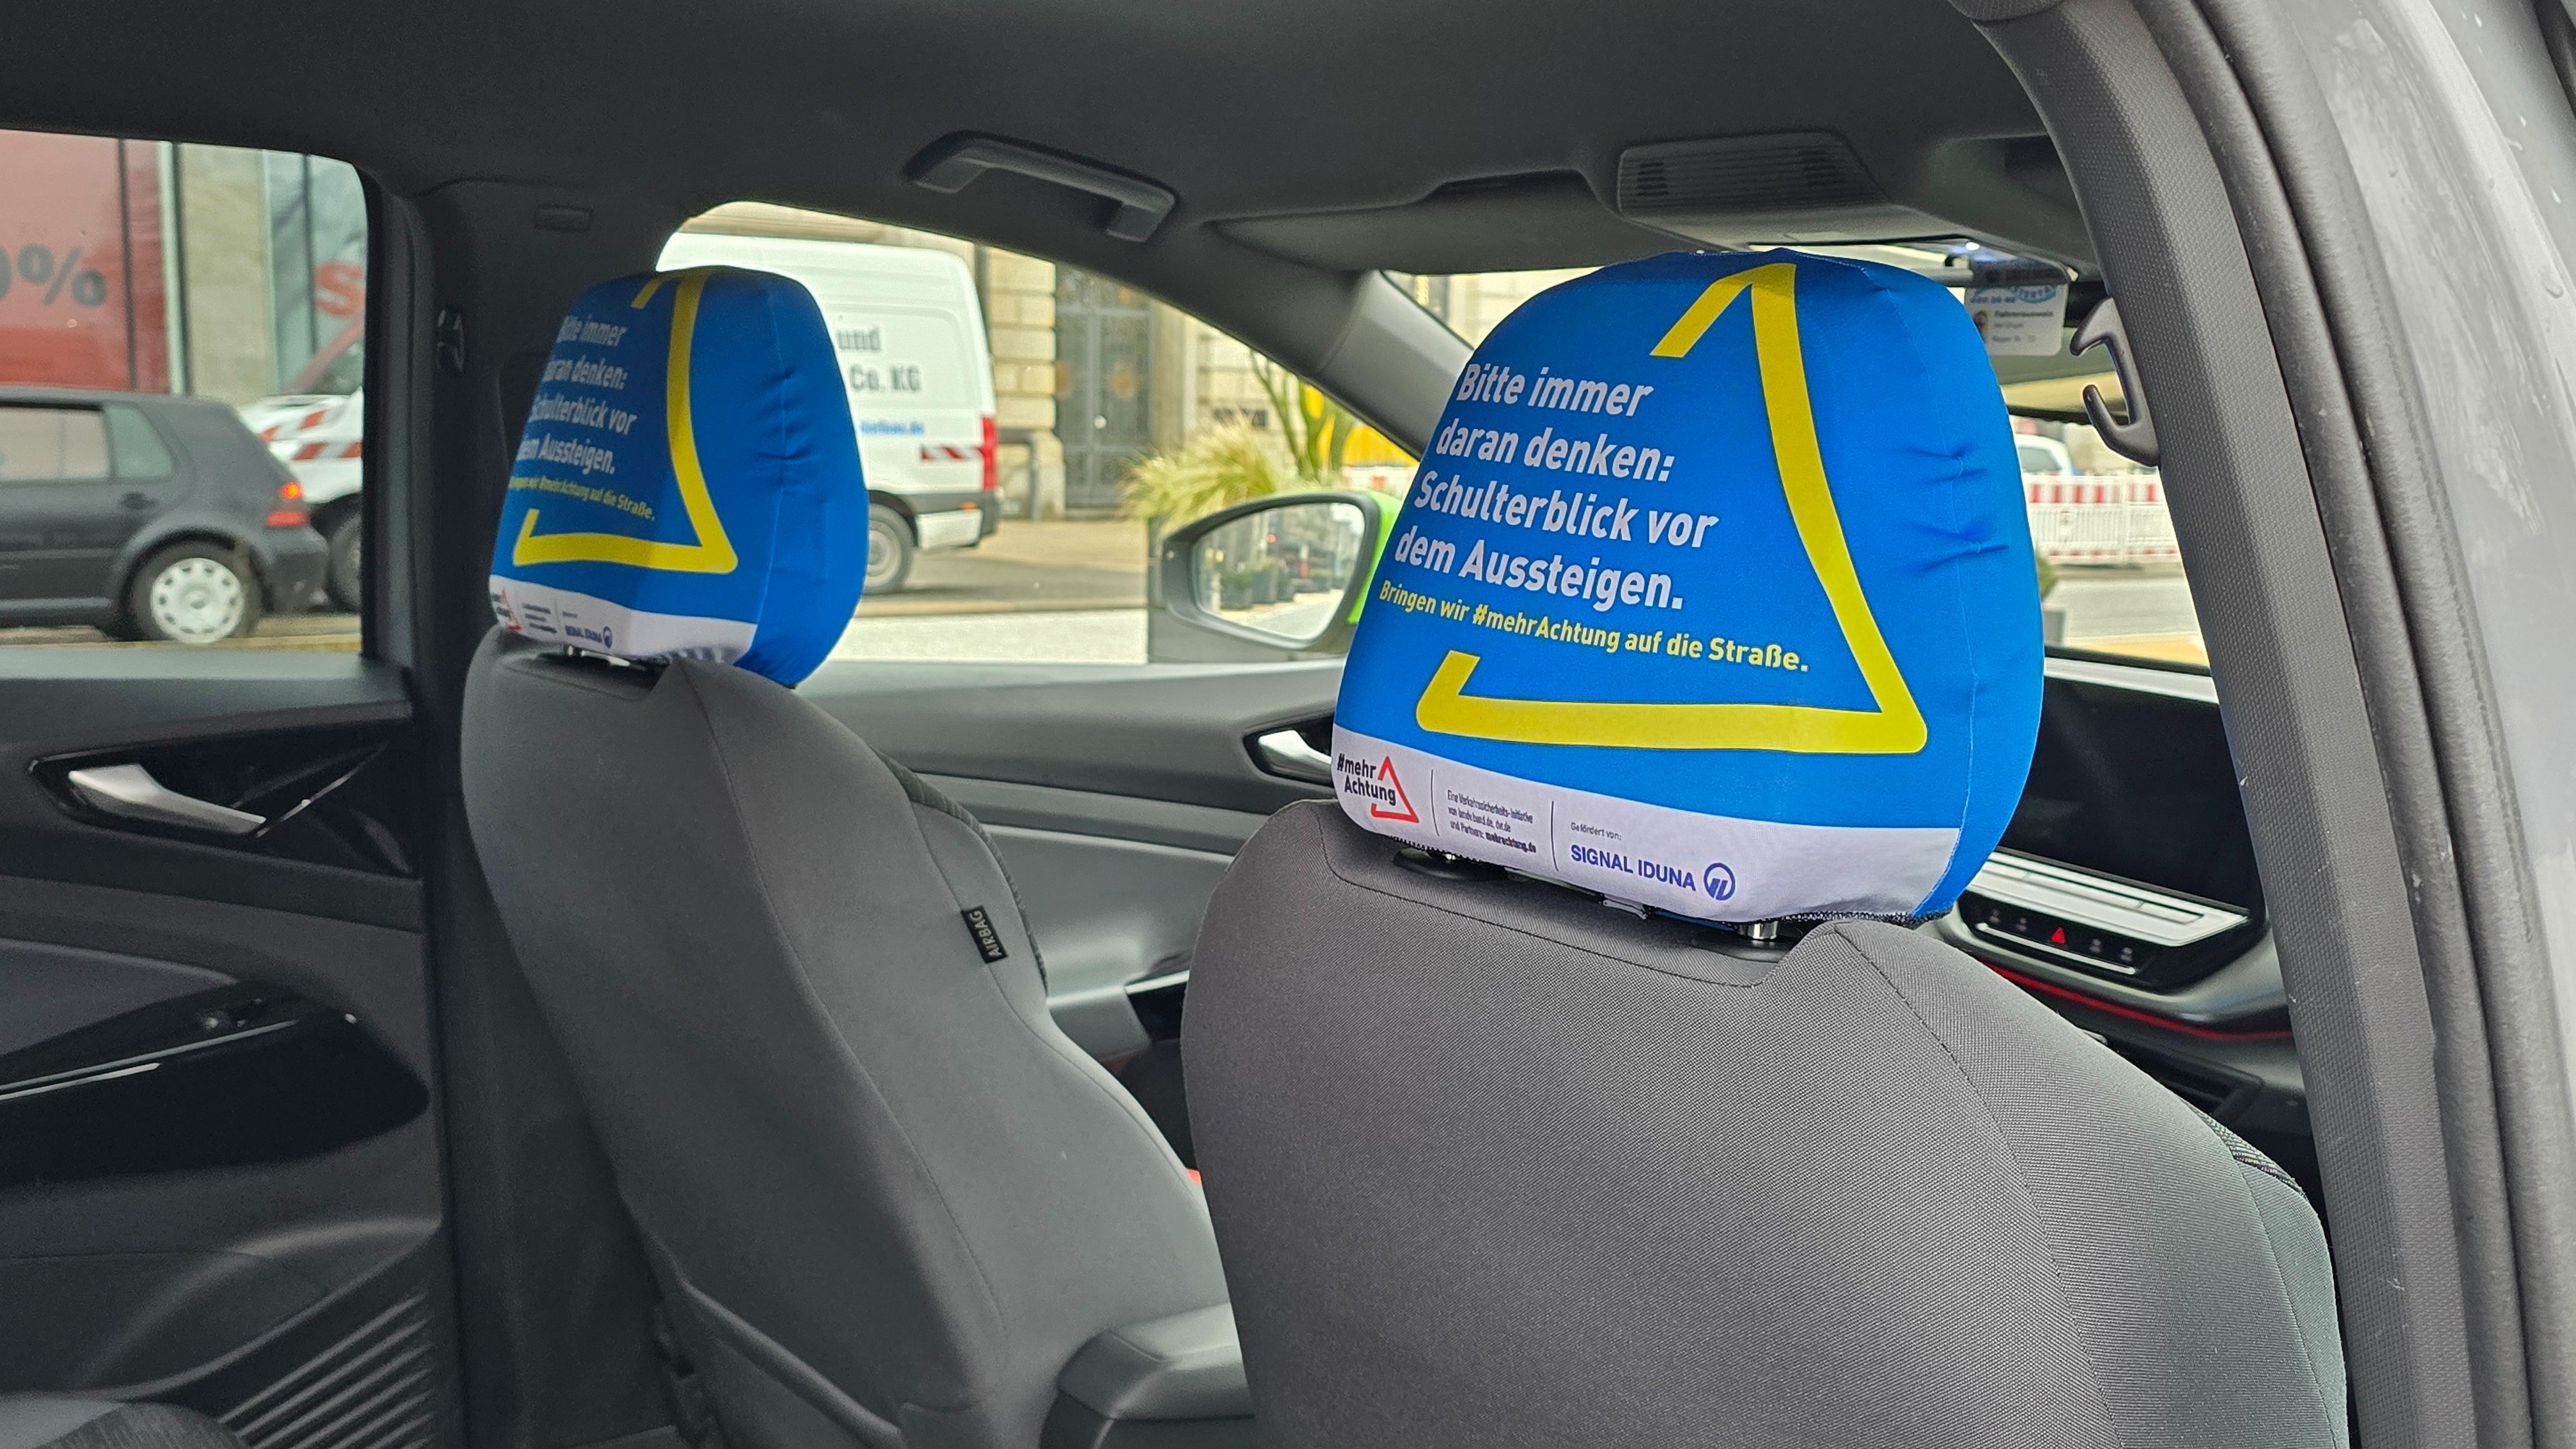 Die Kopfstützen eines Taxis tragen einen Bezug. Auf den Bezügen steht: Bitte immer daran denken: Schulterblick vor dem Aussteigen.